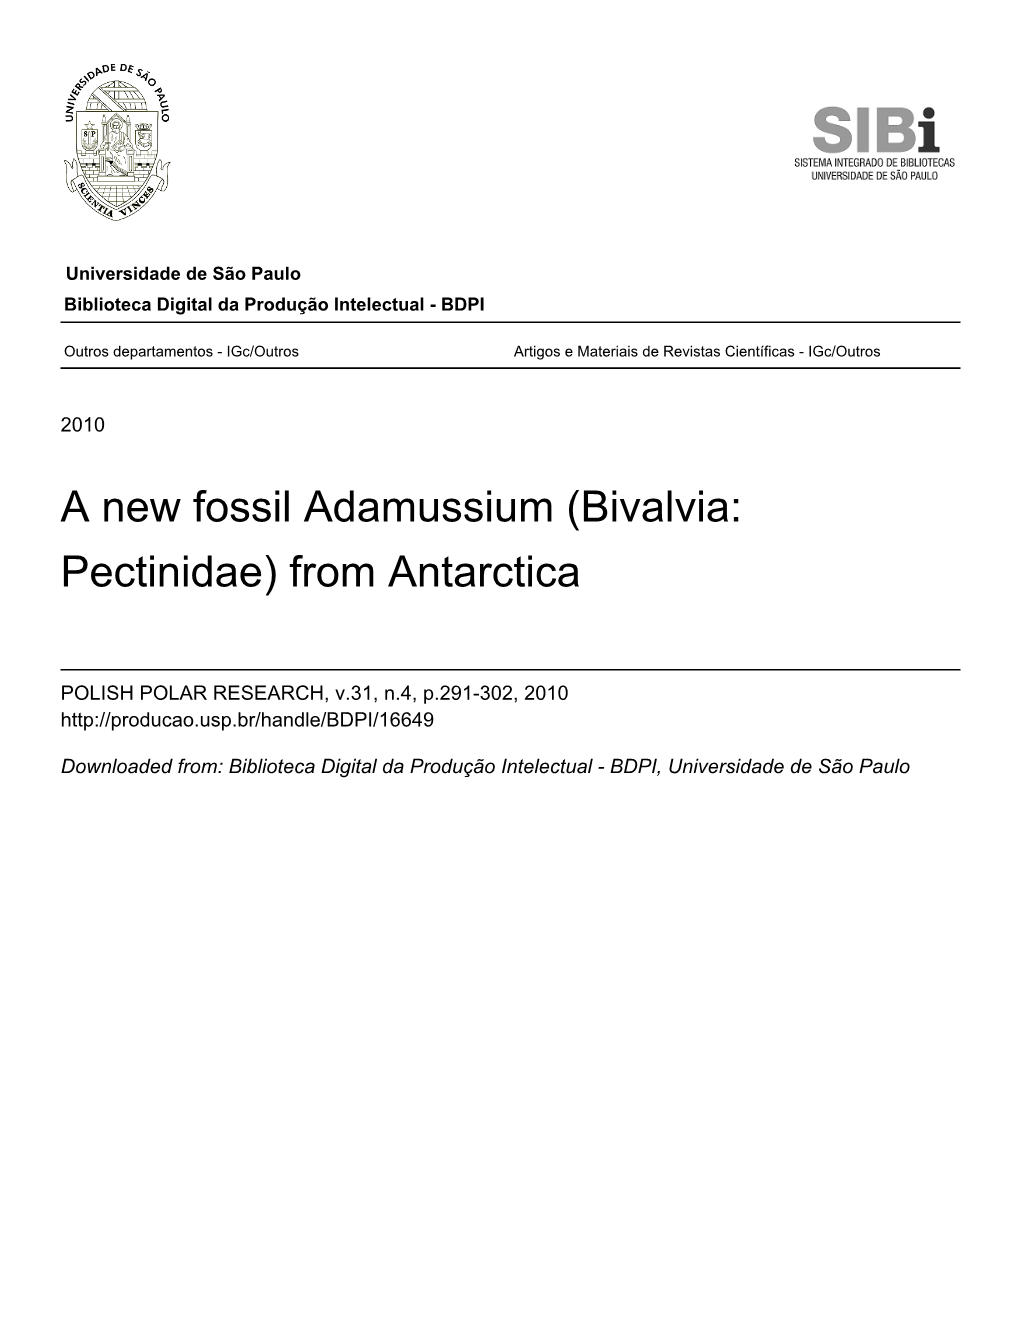 A New Fossil Adamussium (Bivalvia: Pectinidae) from Antarctica